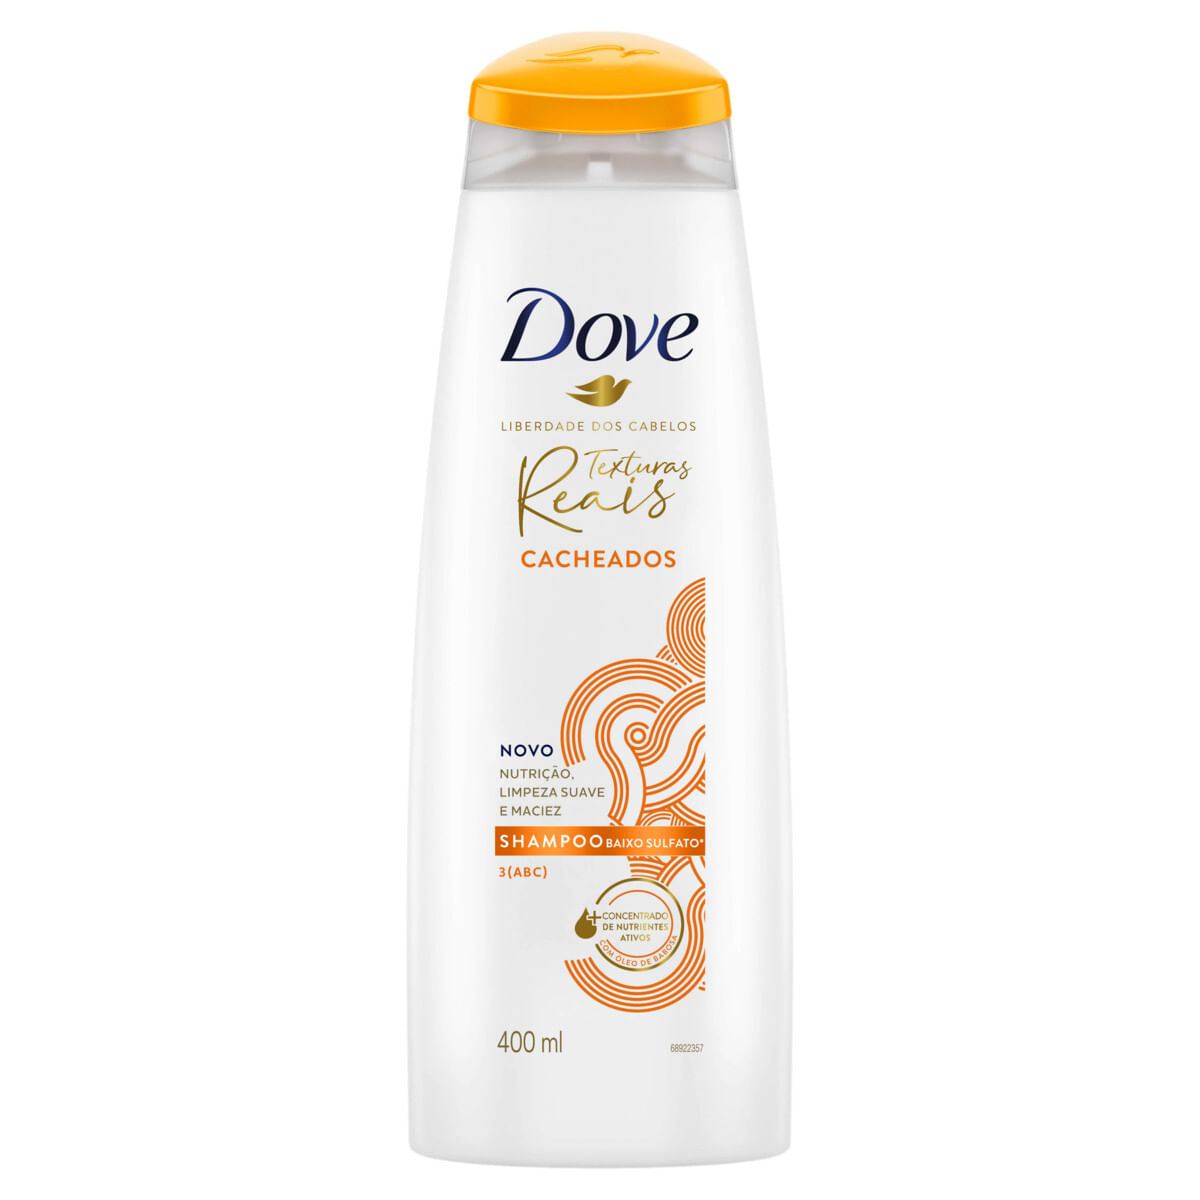 Shampoo-Dove-Texturas-Reais-Cacheados-Oleo-de-Babosa-400ml